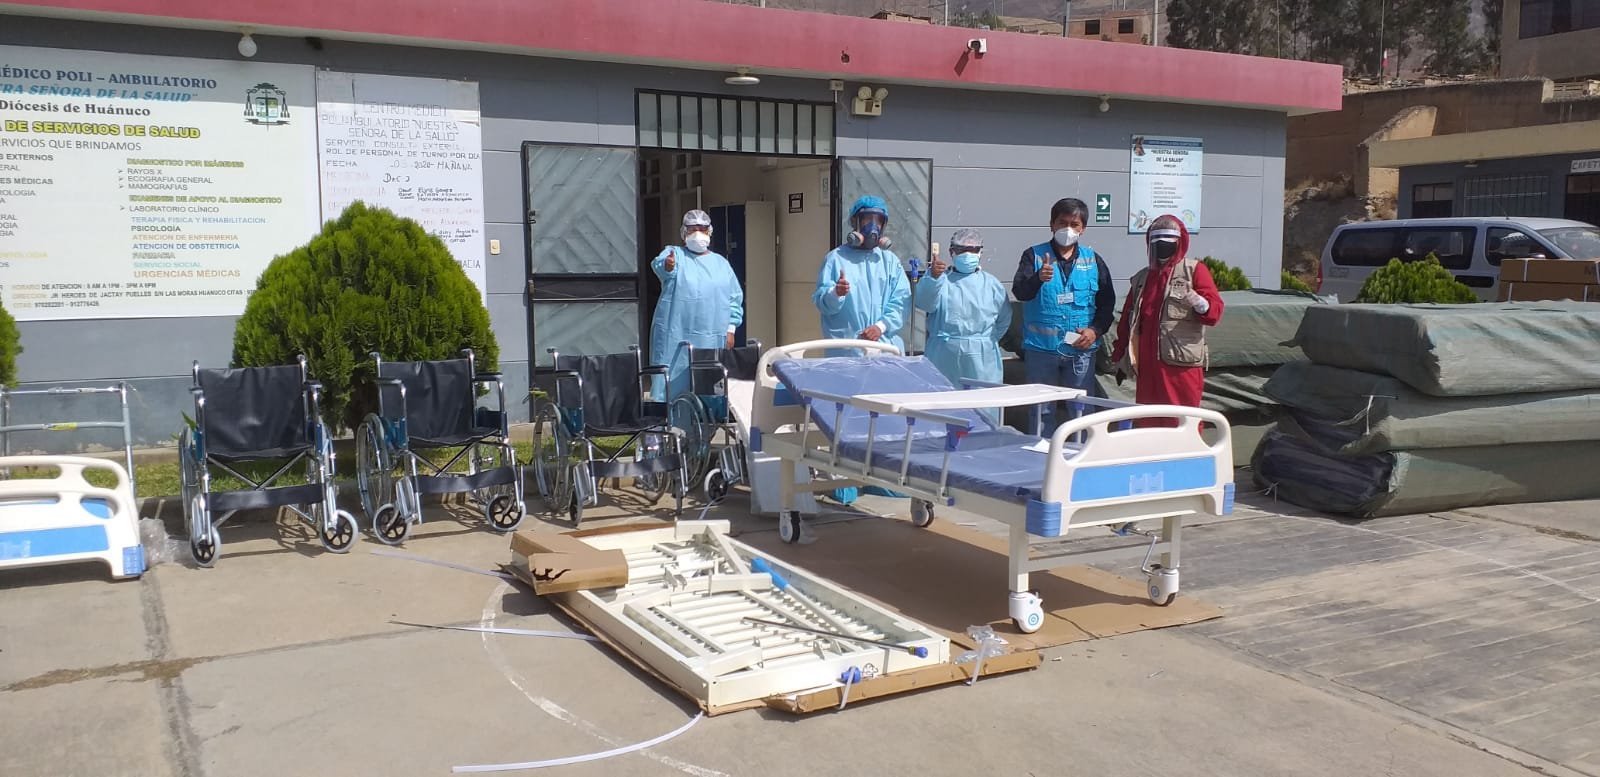 La ‘Fundación Dyer e Hijos’ entrega 50 camas hospitalarias a EsSalud Huánuco